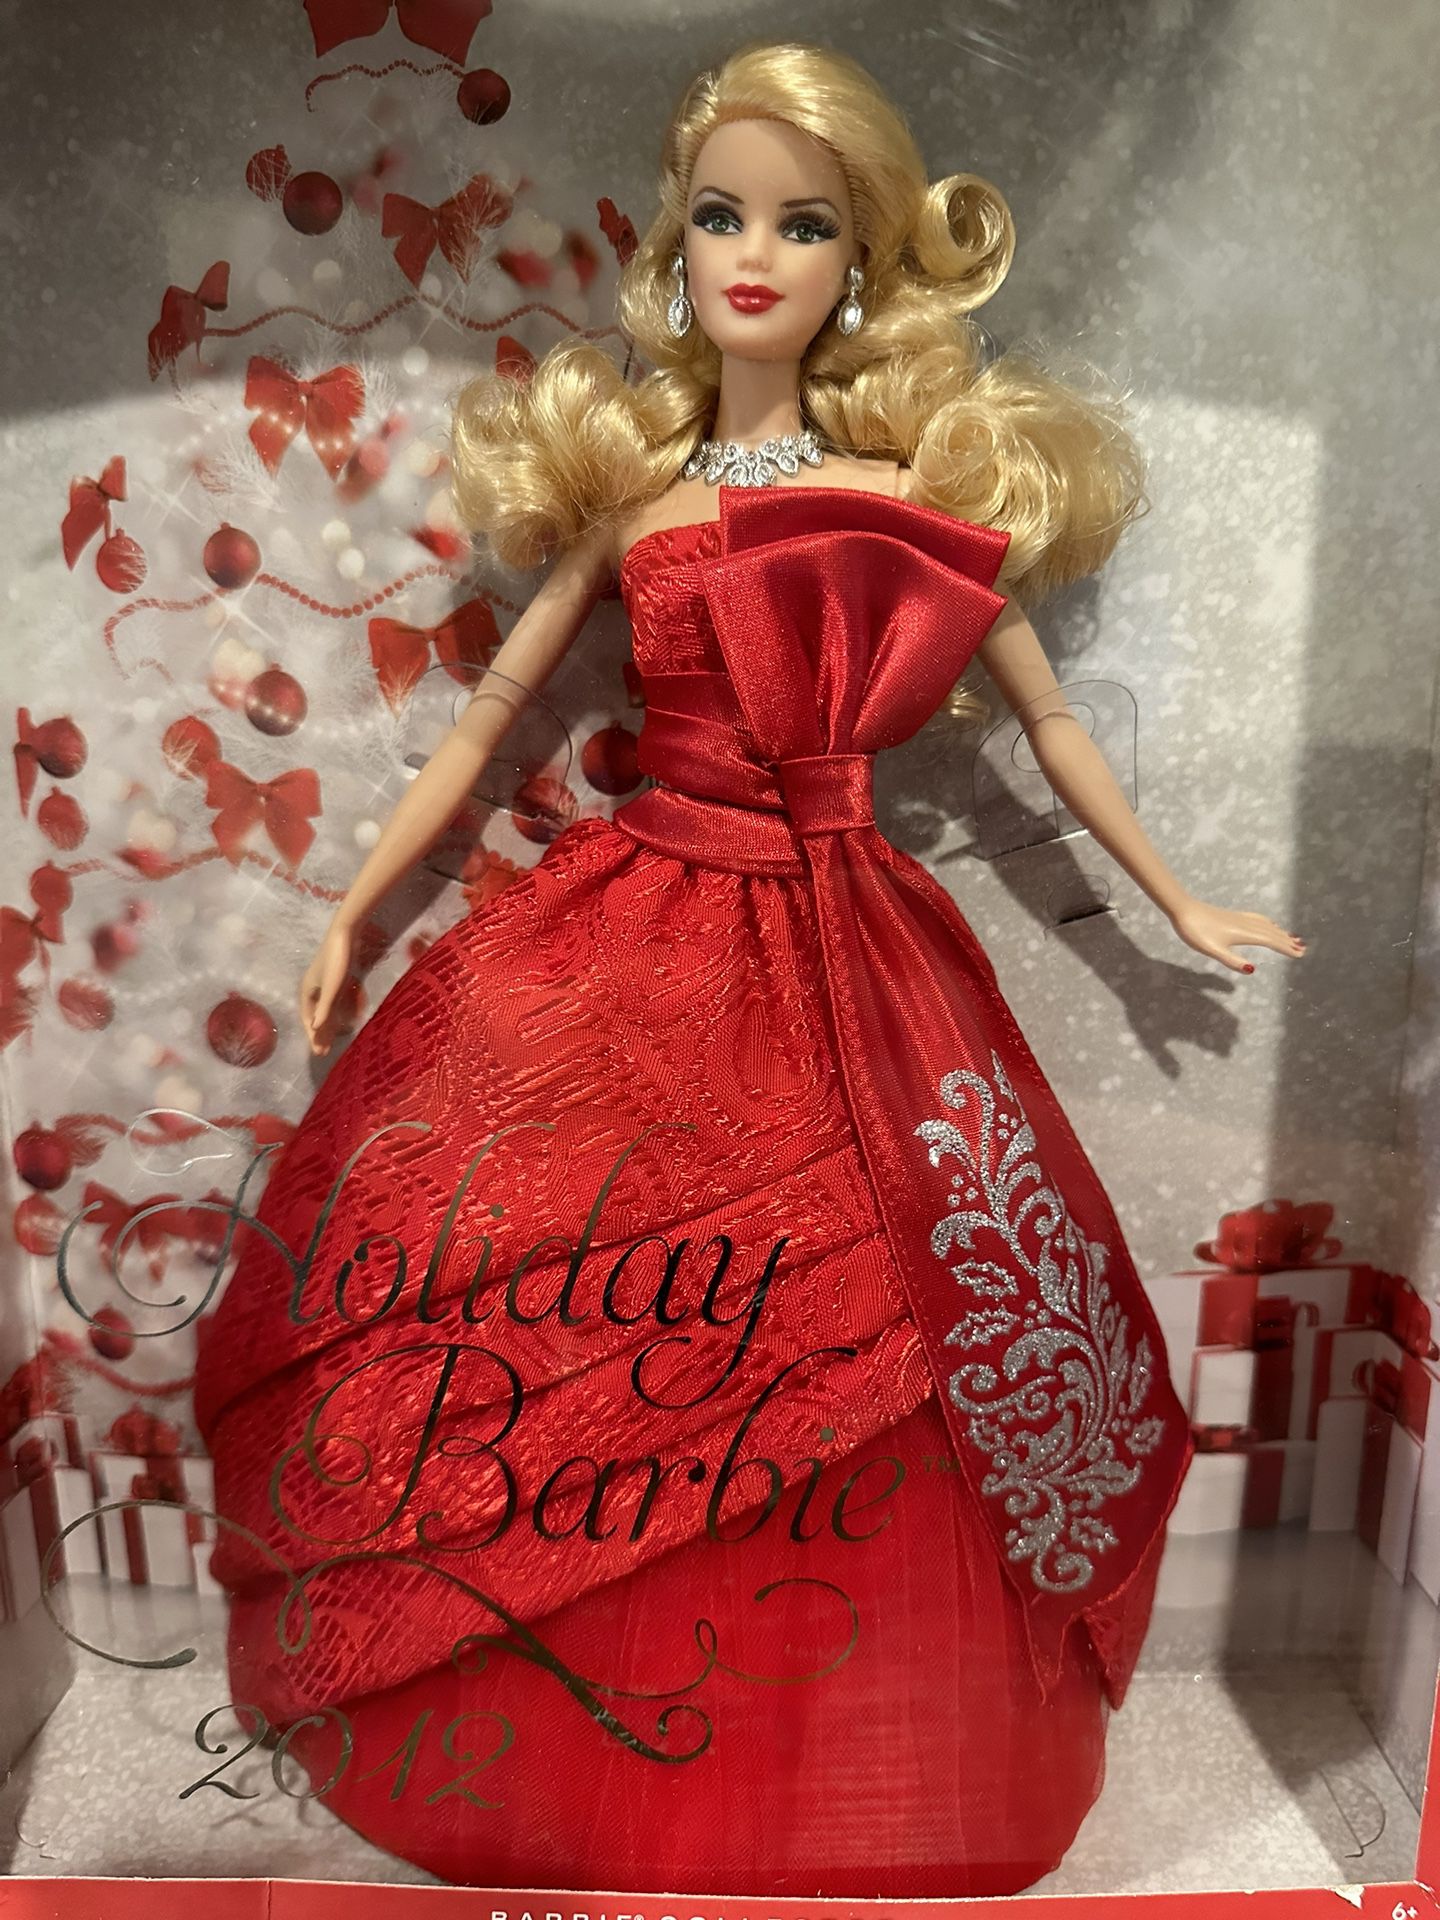 2012 Holiday babie